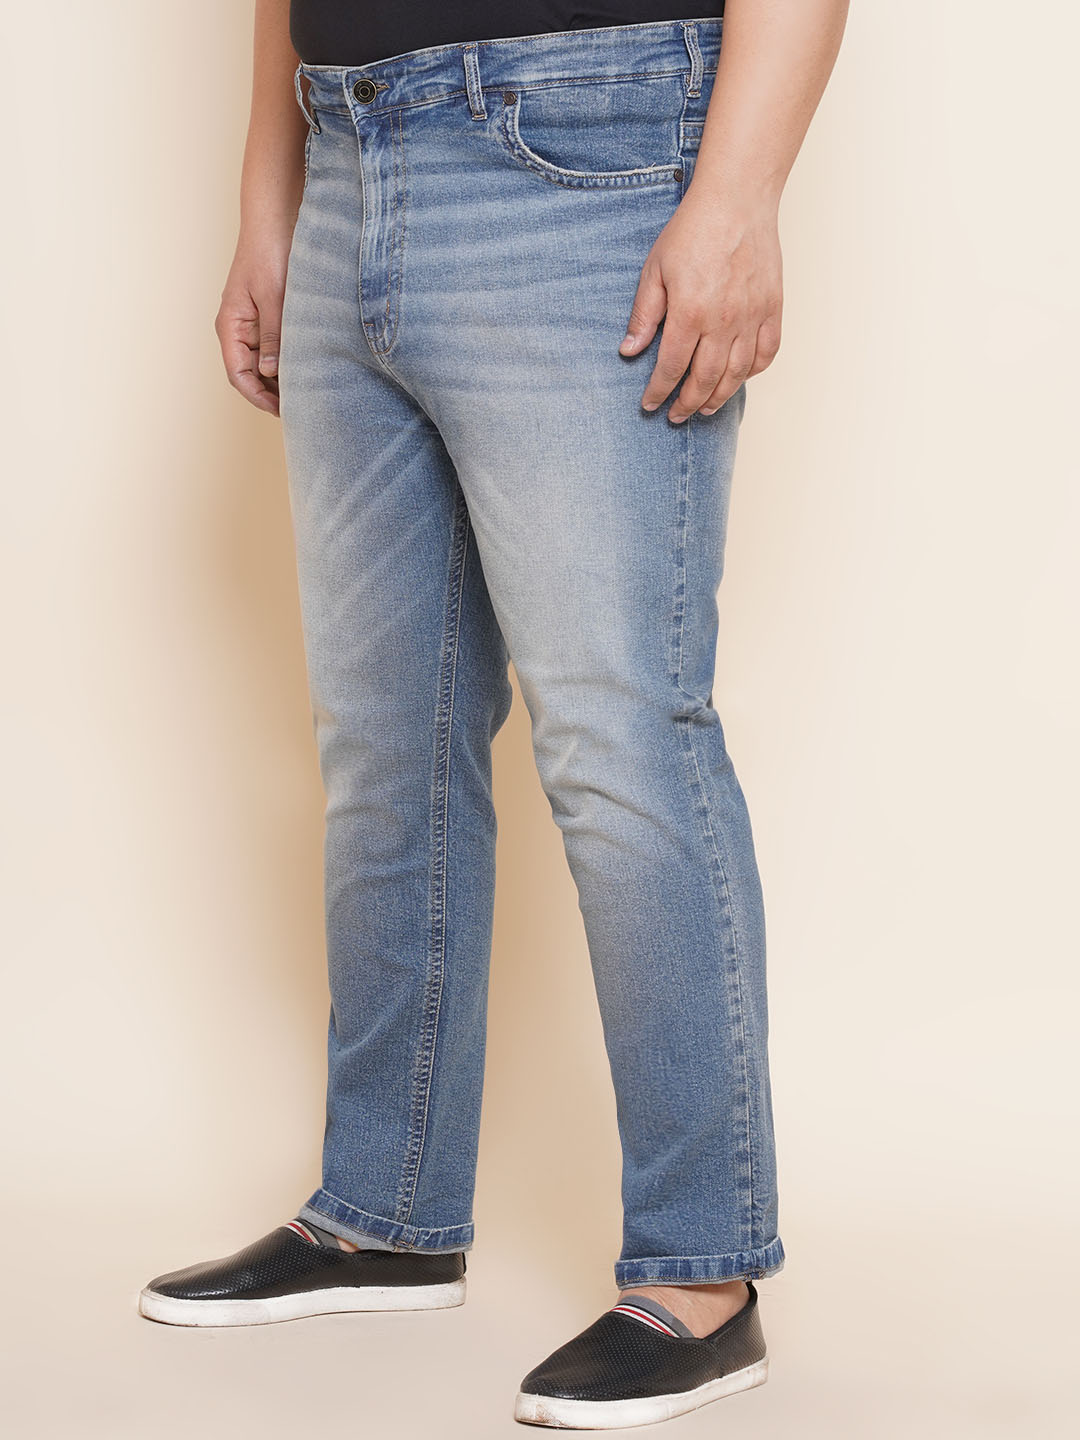 bottomwear/jeans/JPJ12296/jpj12296-4.jpg